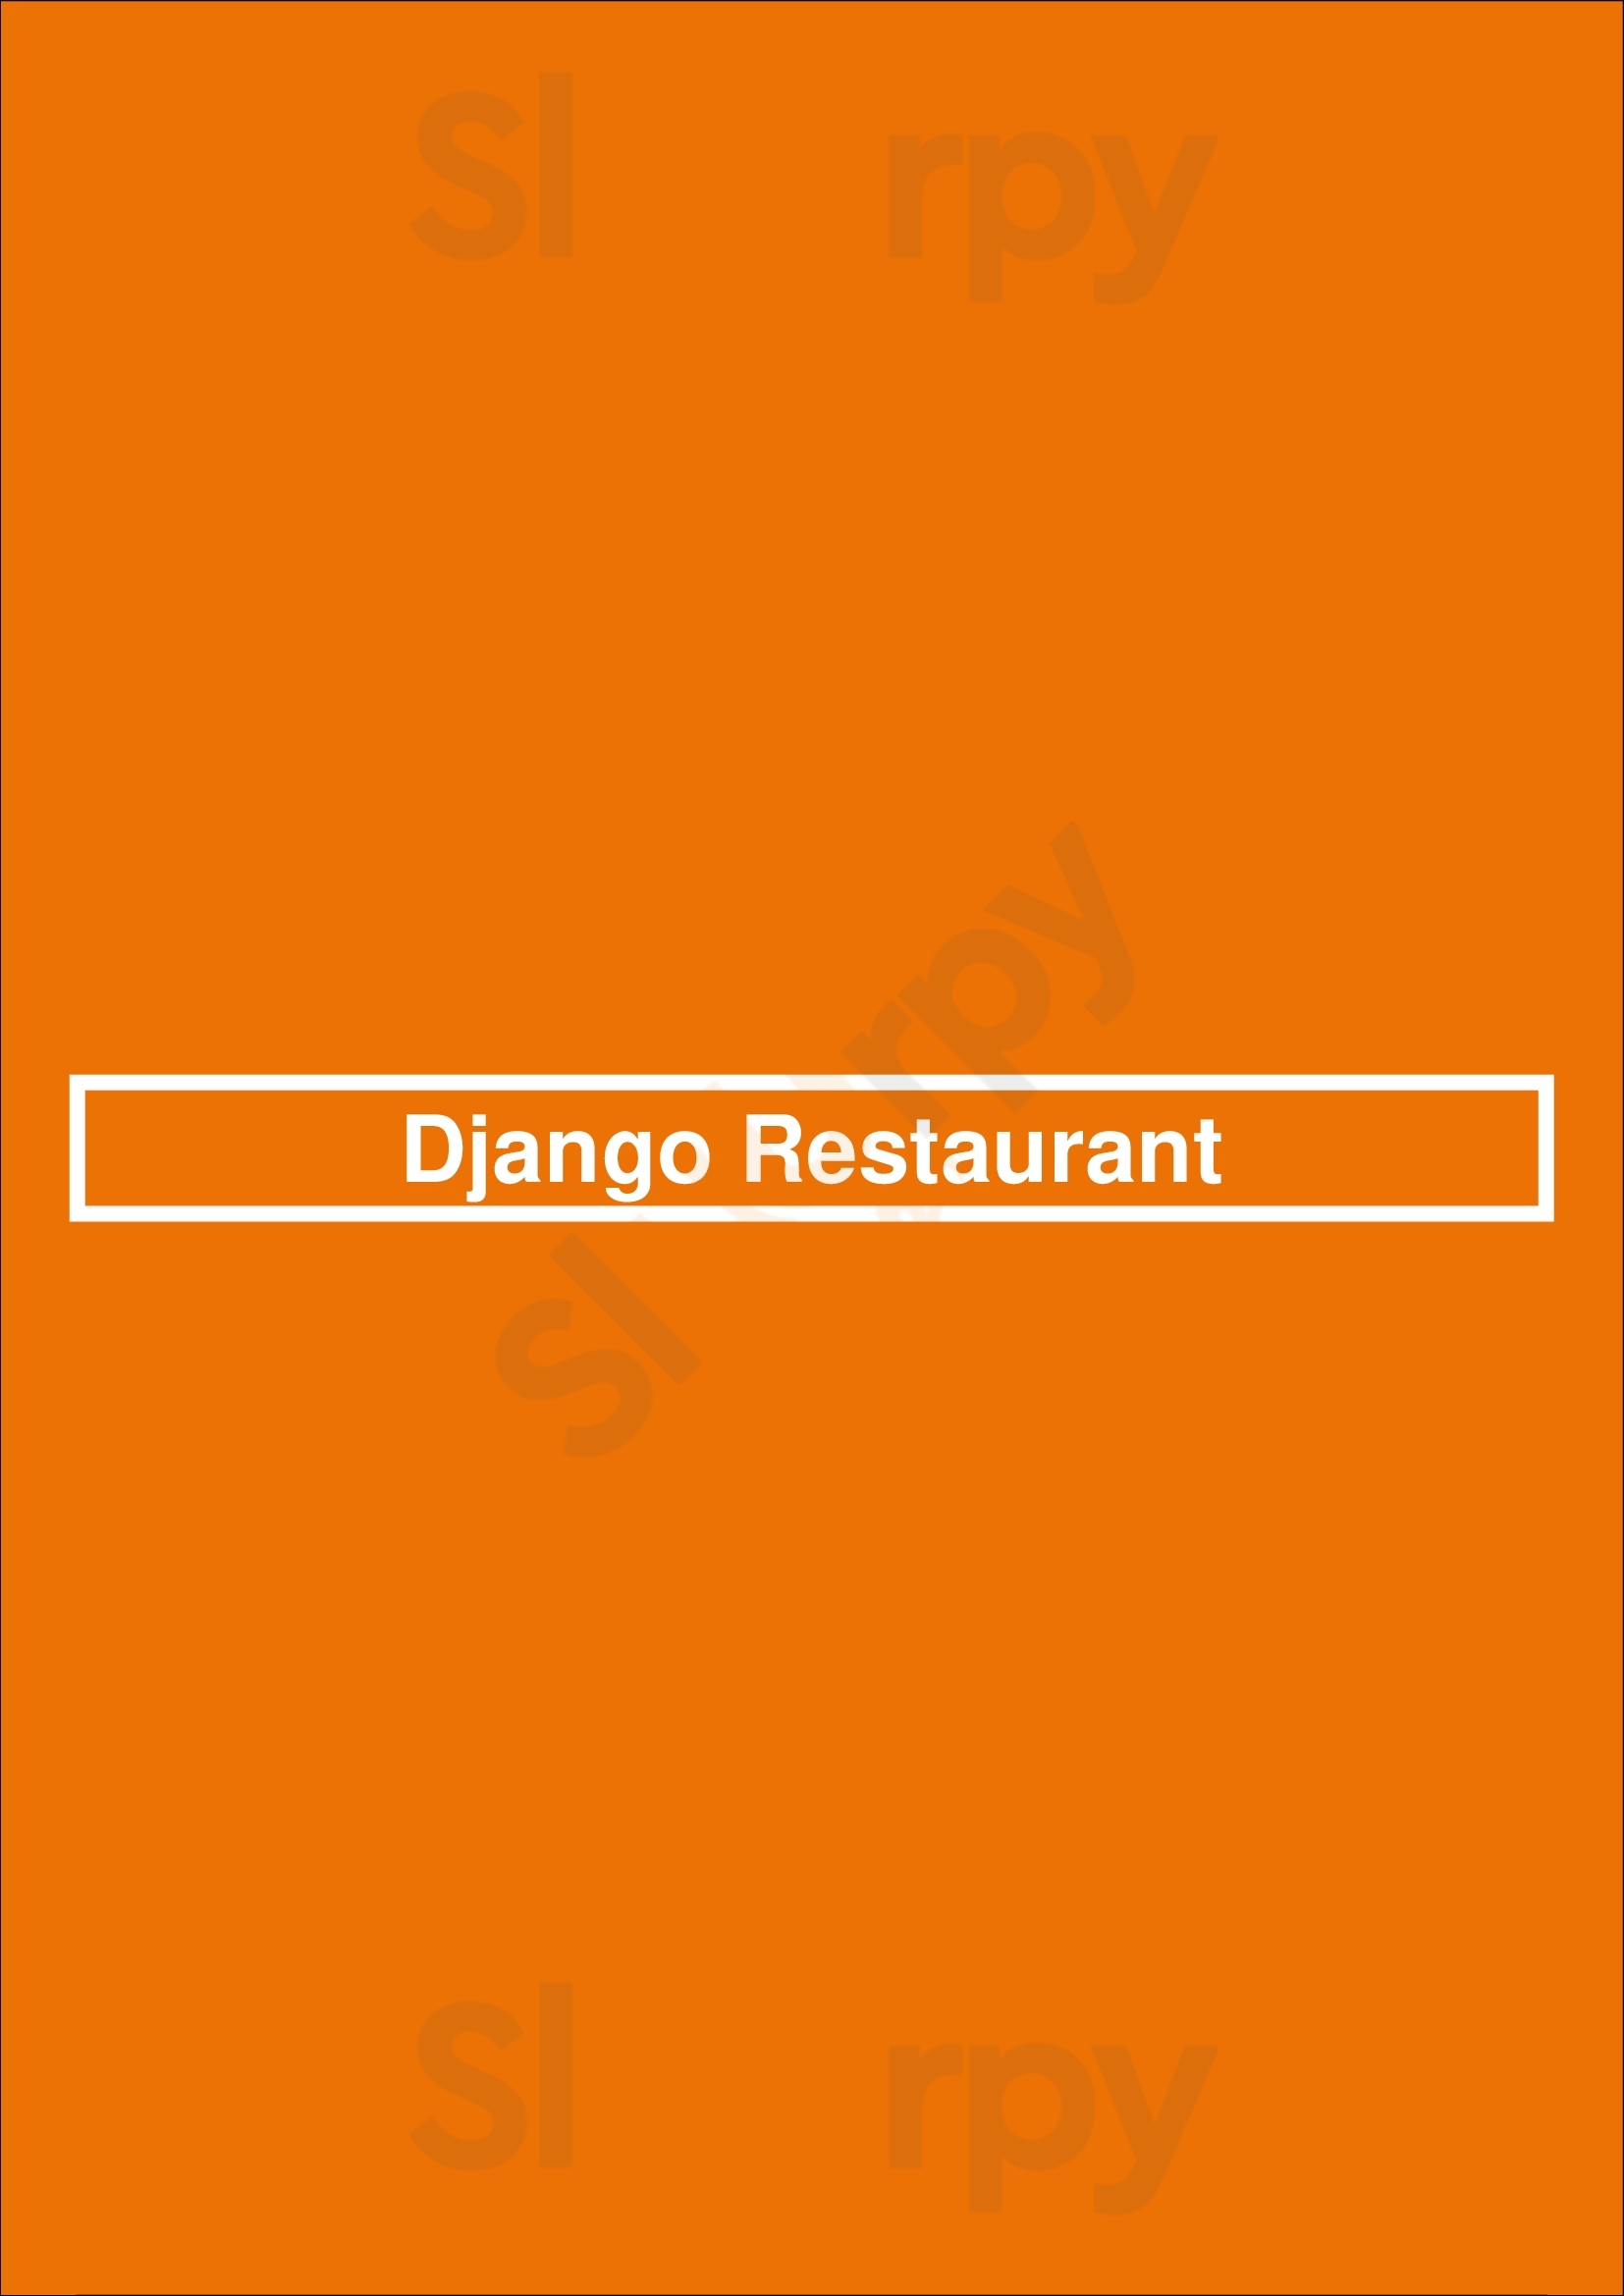 Django Restaurant Des Moines Menu - 1